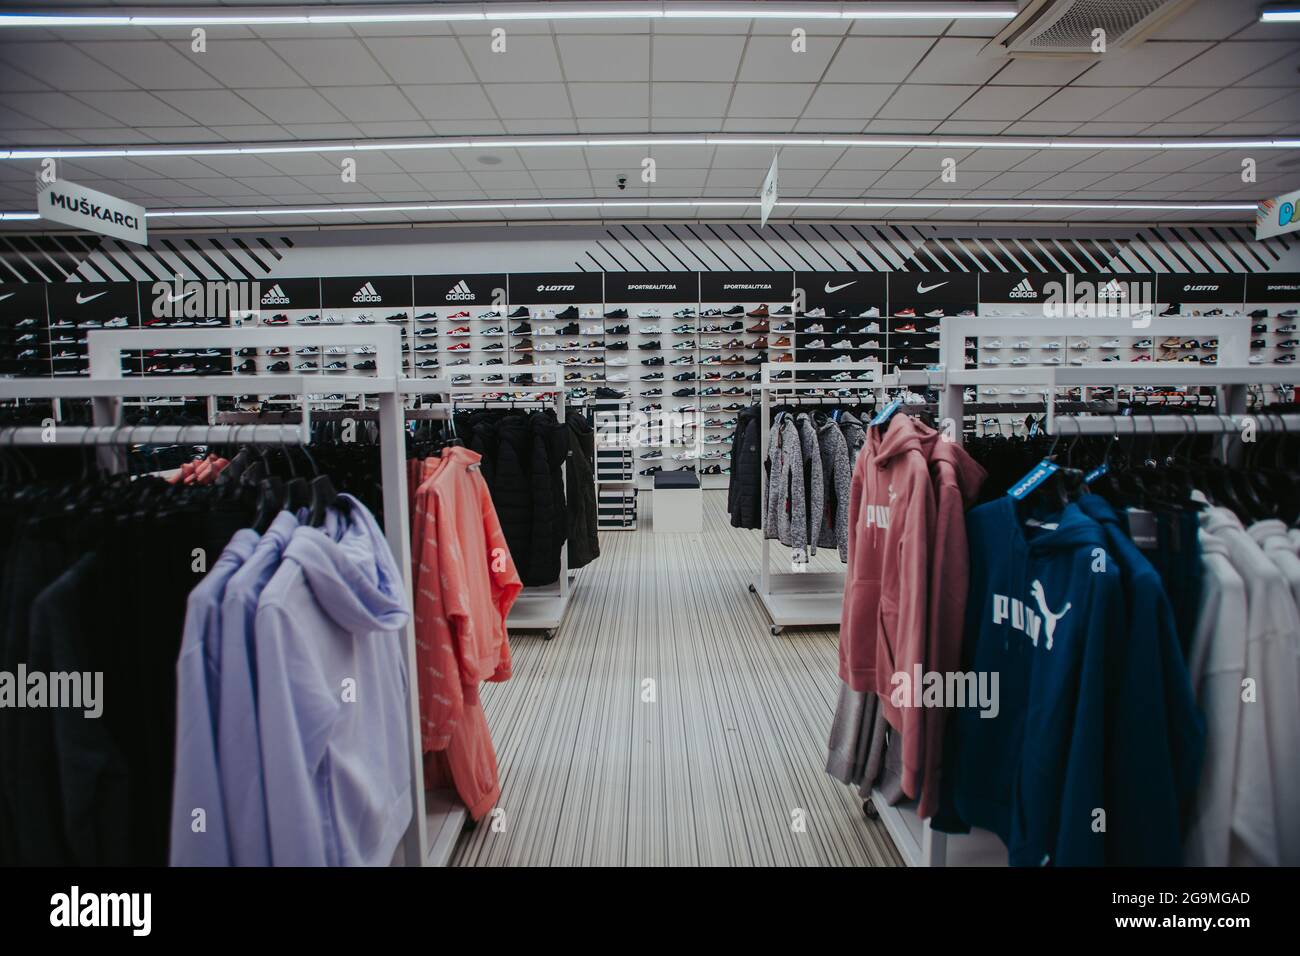 SARAJEVO, BOSNIA AND HERZEGOVINA - Nov 02, 2020: A sports equipment store  in Bosnia and Herzegovina Stock Photo - Alamy